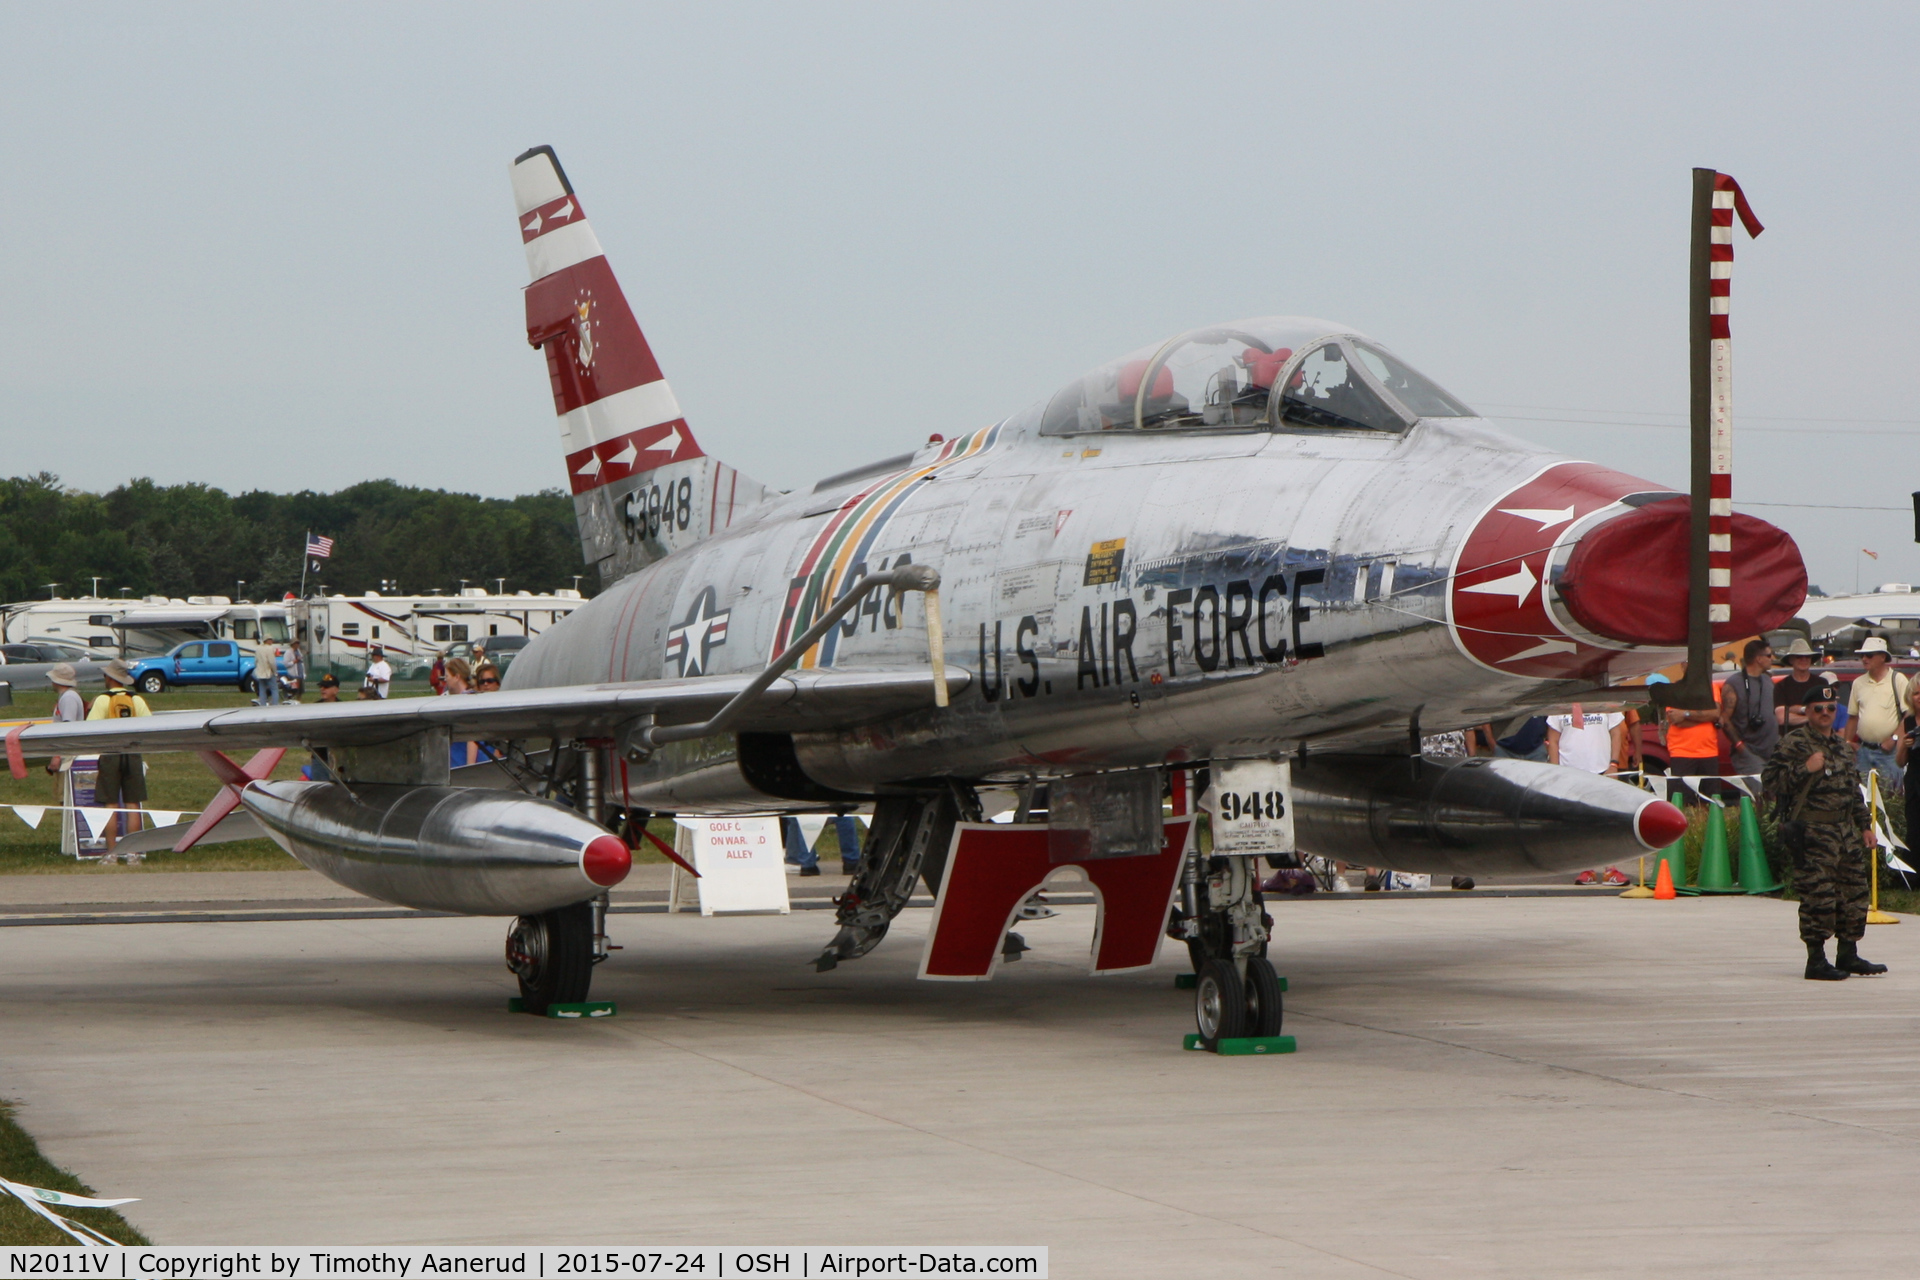 N2011V, 1958 North American F-100F Super Sabre C/N 243-224, 1958 North American F-100F Super Sabre, c/n: 243-224